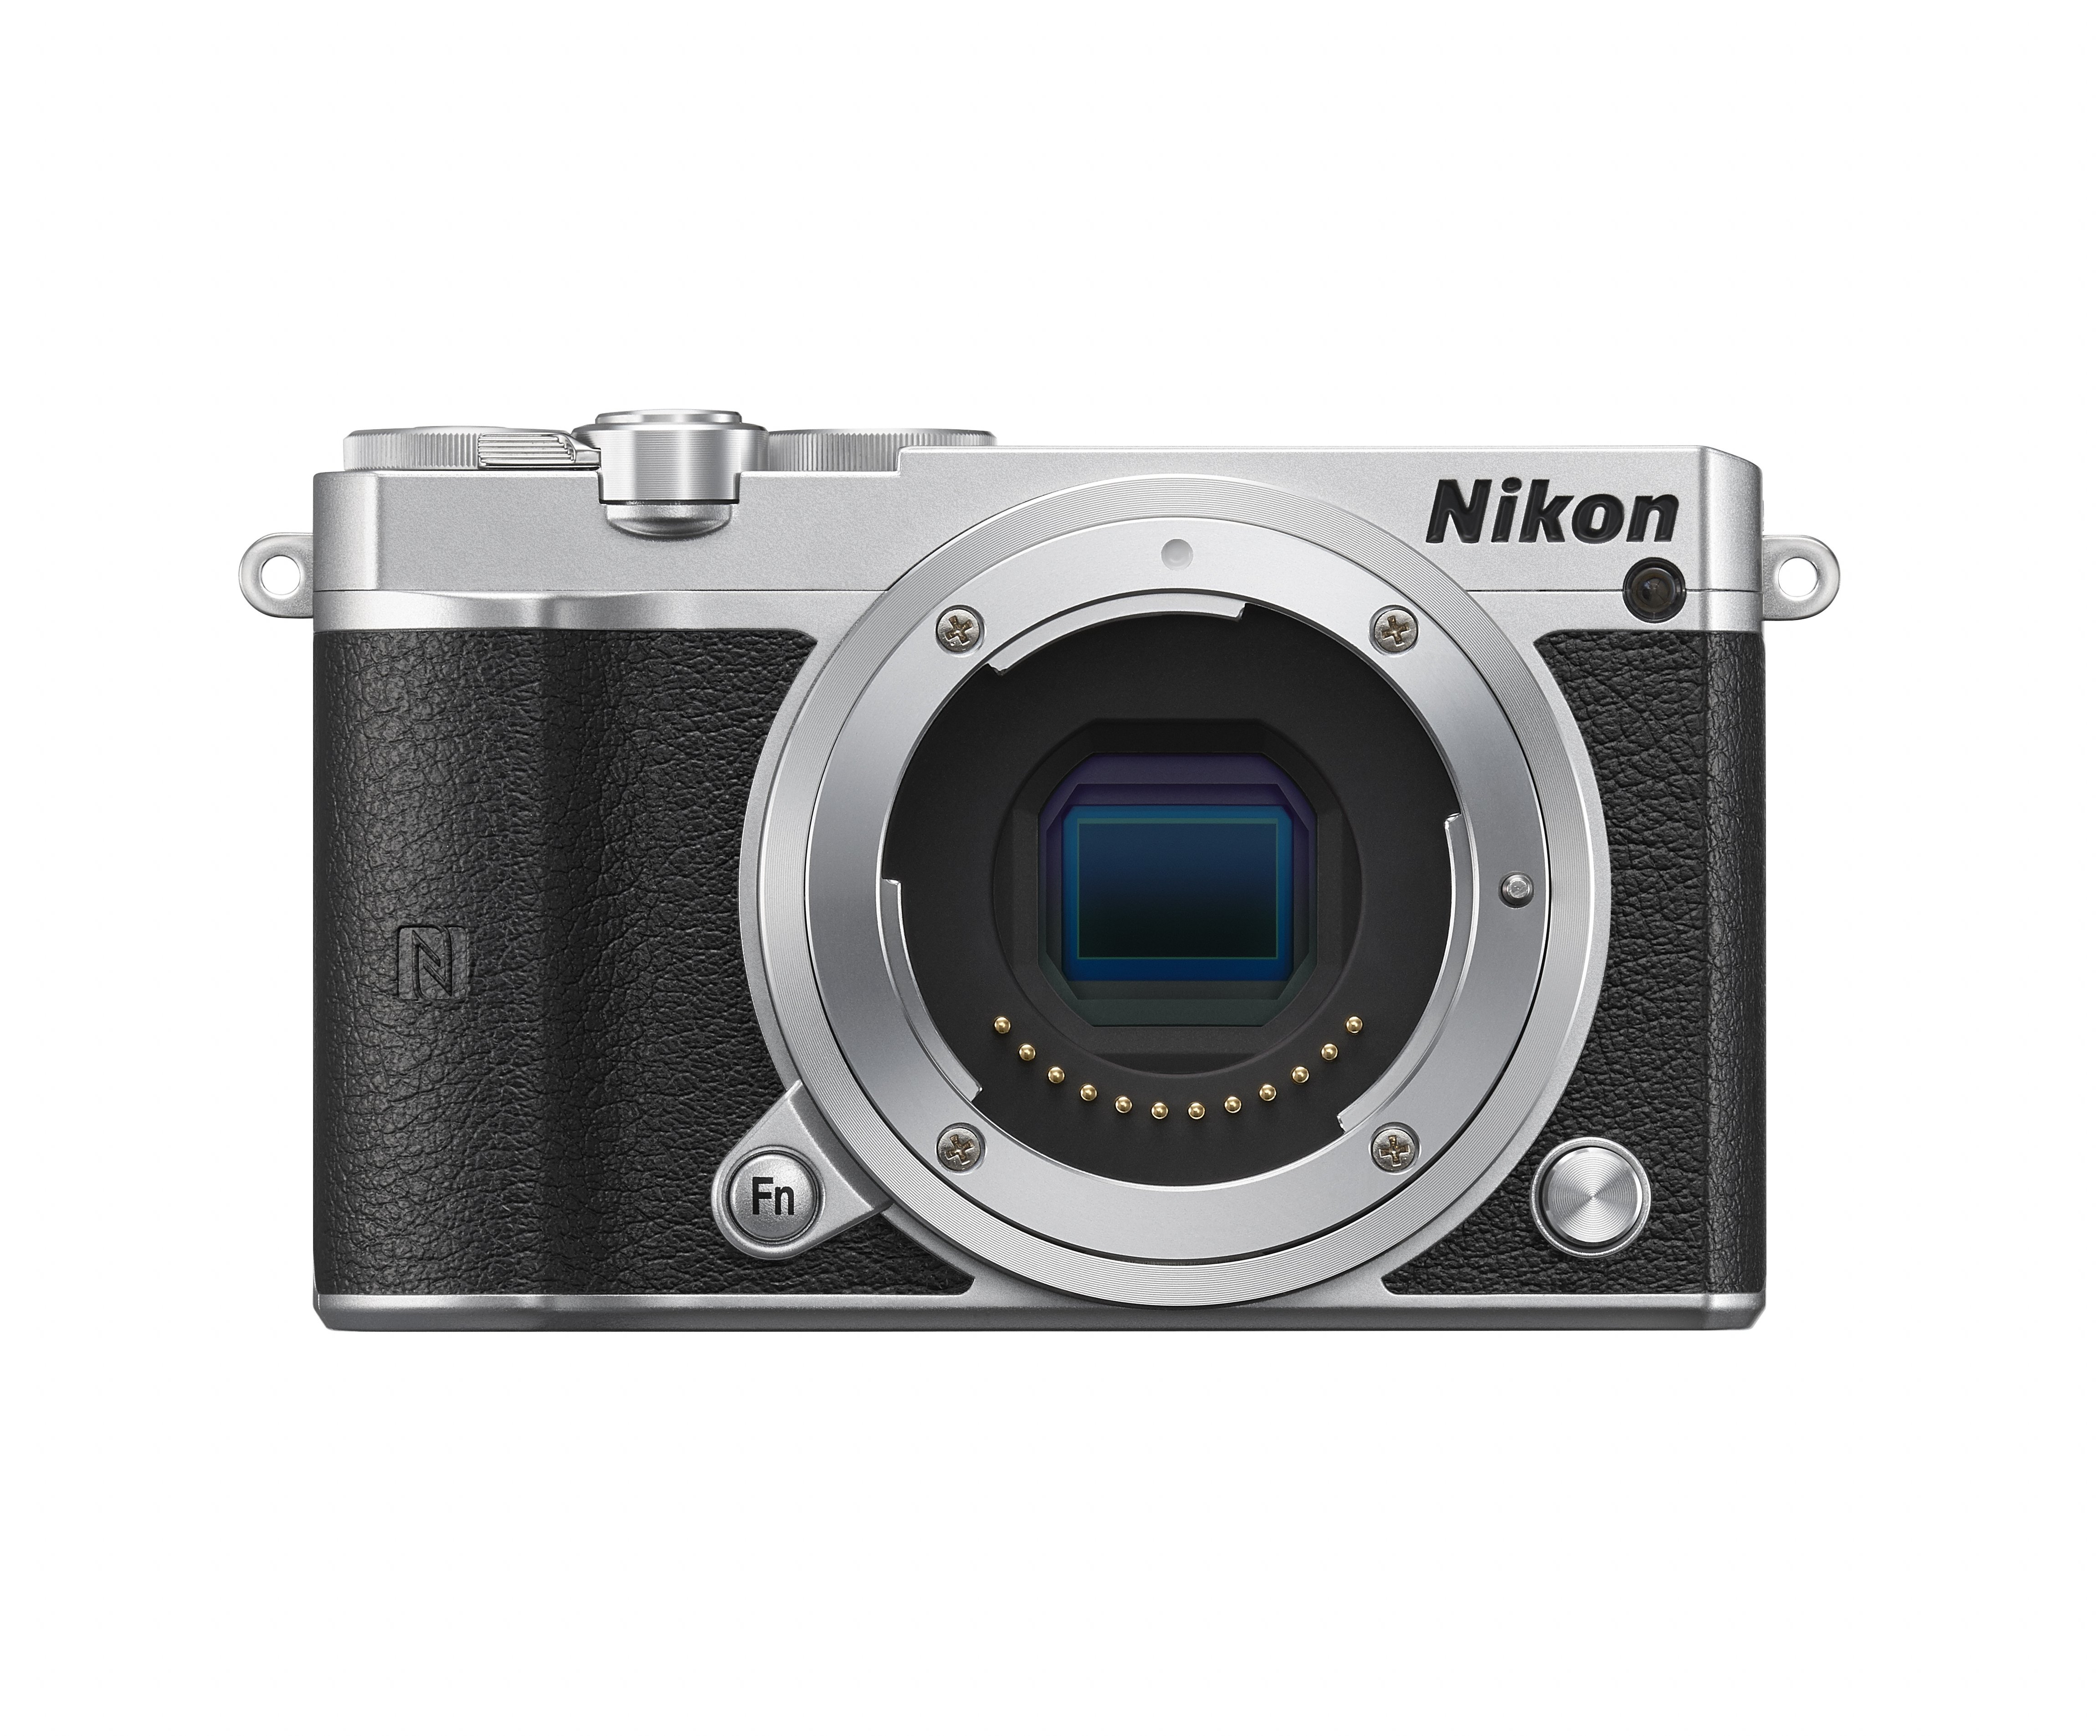 nikon lanza la camara 1 j5 que fotografia hasta 20 cuadros por segundo sl front high